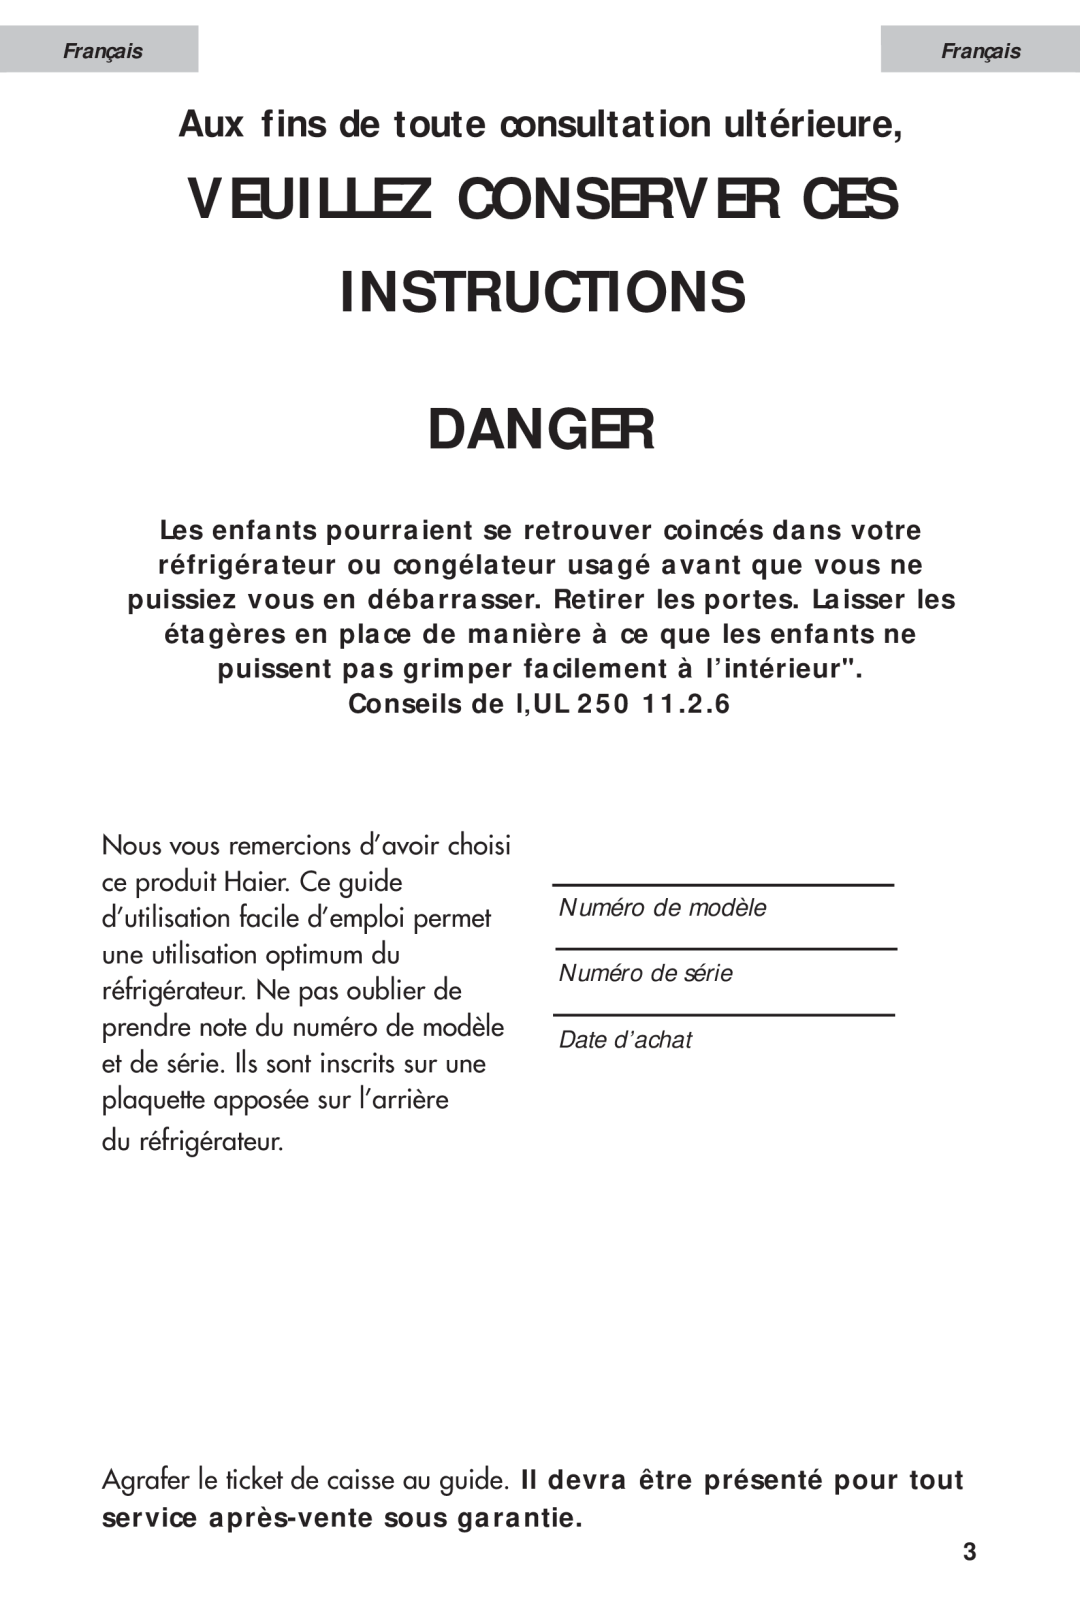 Haier HDE11WNA, HDE10WNA Instructions Danger, Veuillez Conserver Ces, Aux fins de toute consultation ultérieure, Français 